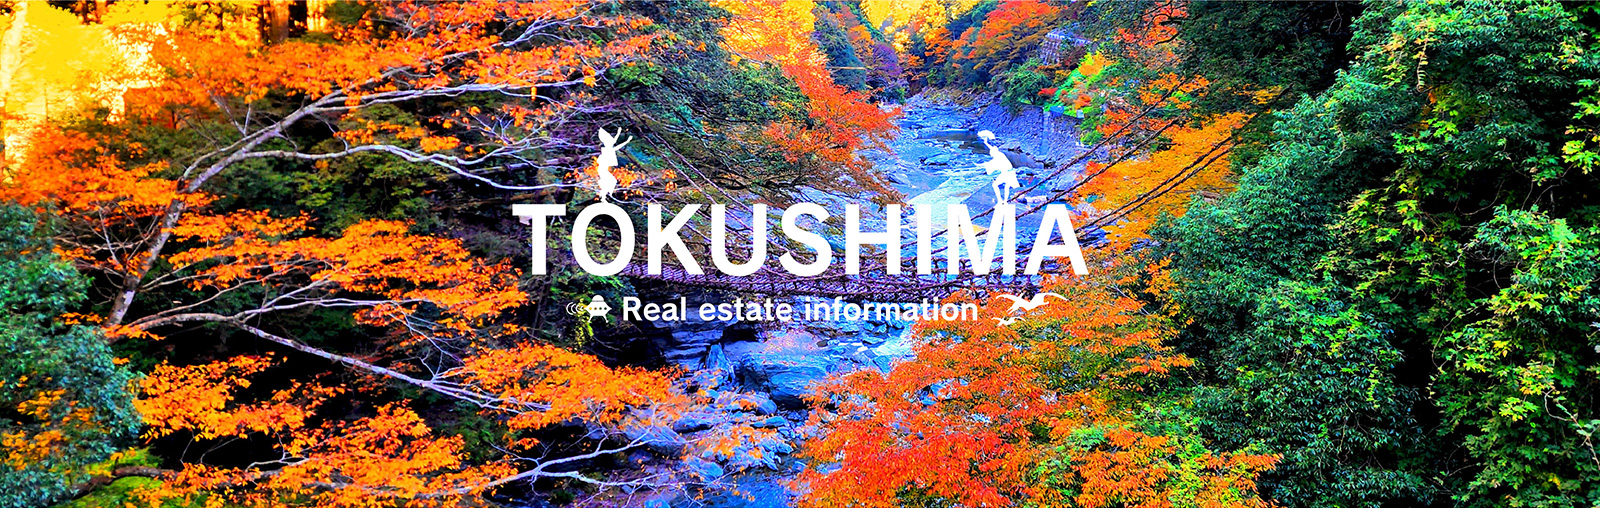 TOKUSHIMA Real estate information